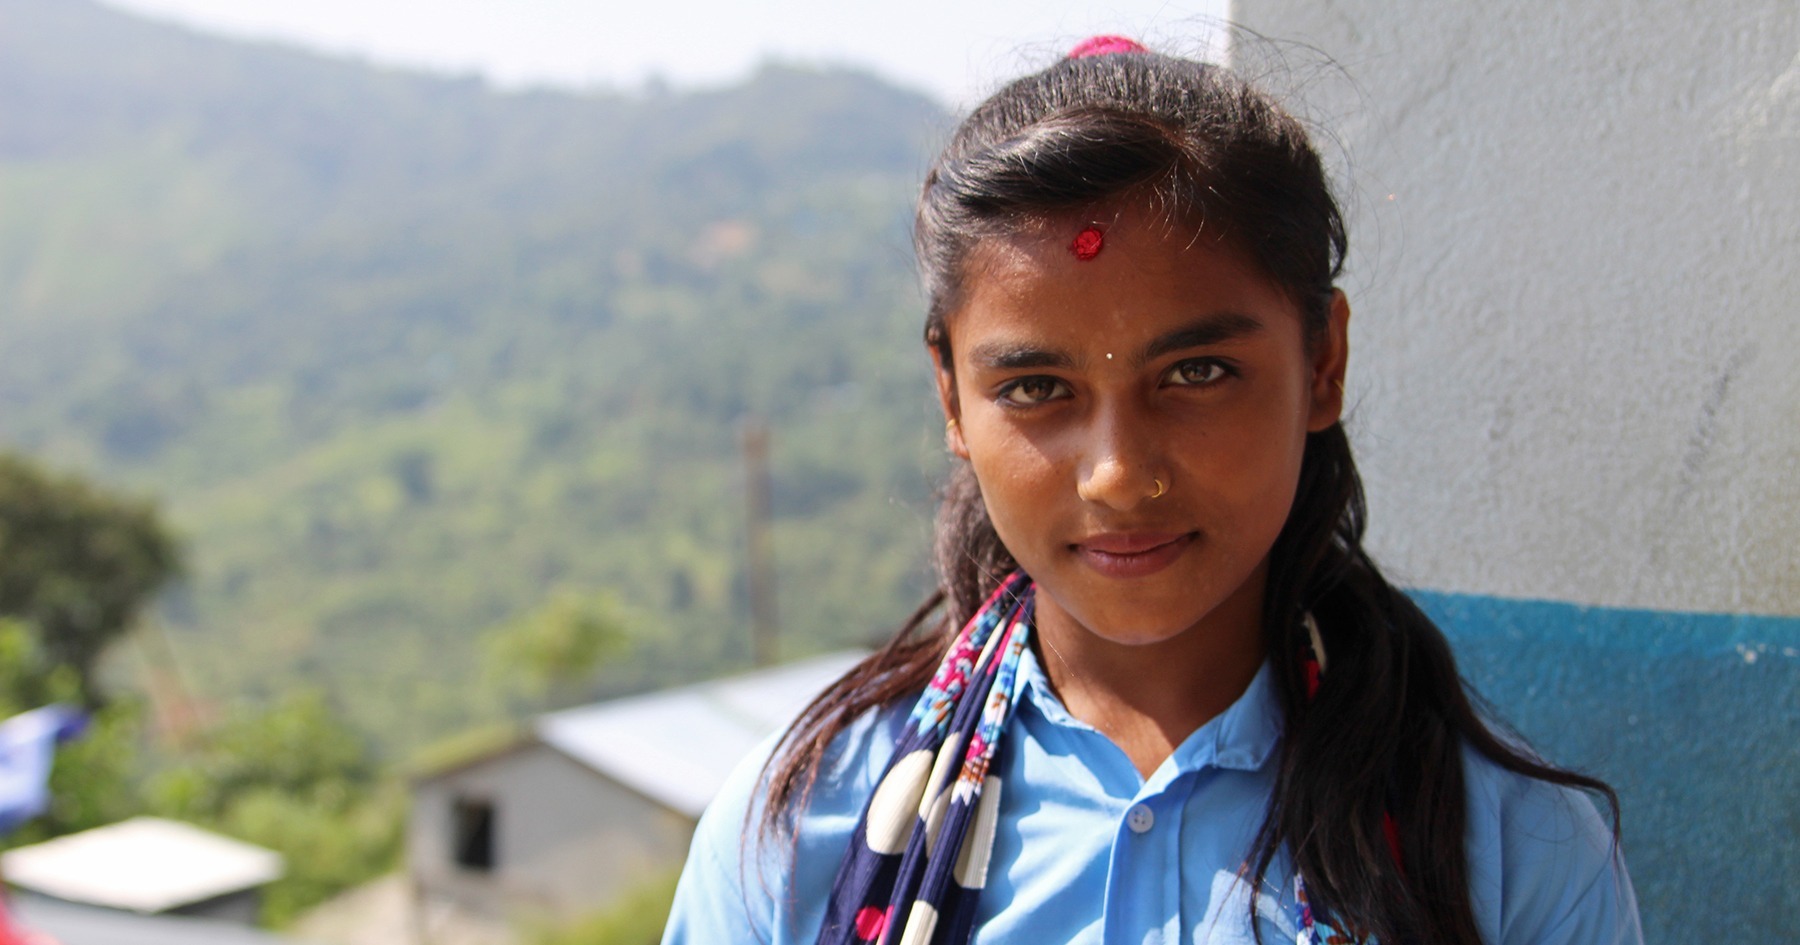 Koulupukuinen Manisha katsoo kameraan hieman hymyillen. Taustalla näkyy vehreitä kukkuloita ja rinteessä oleva rakennus.